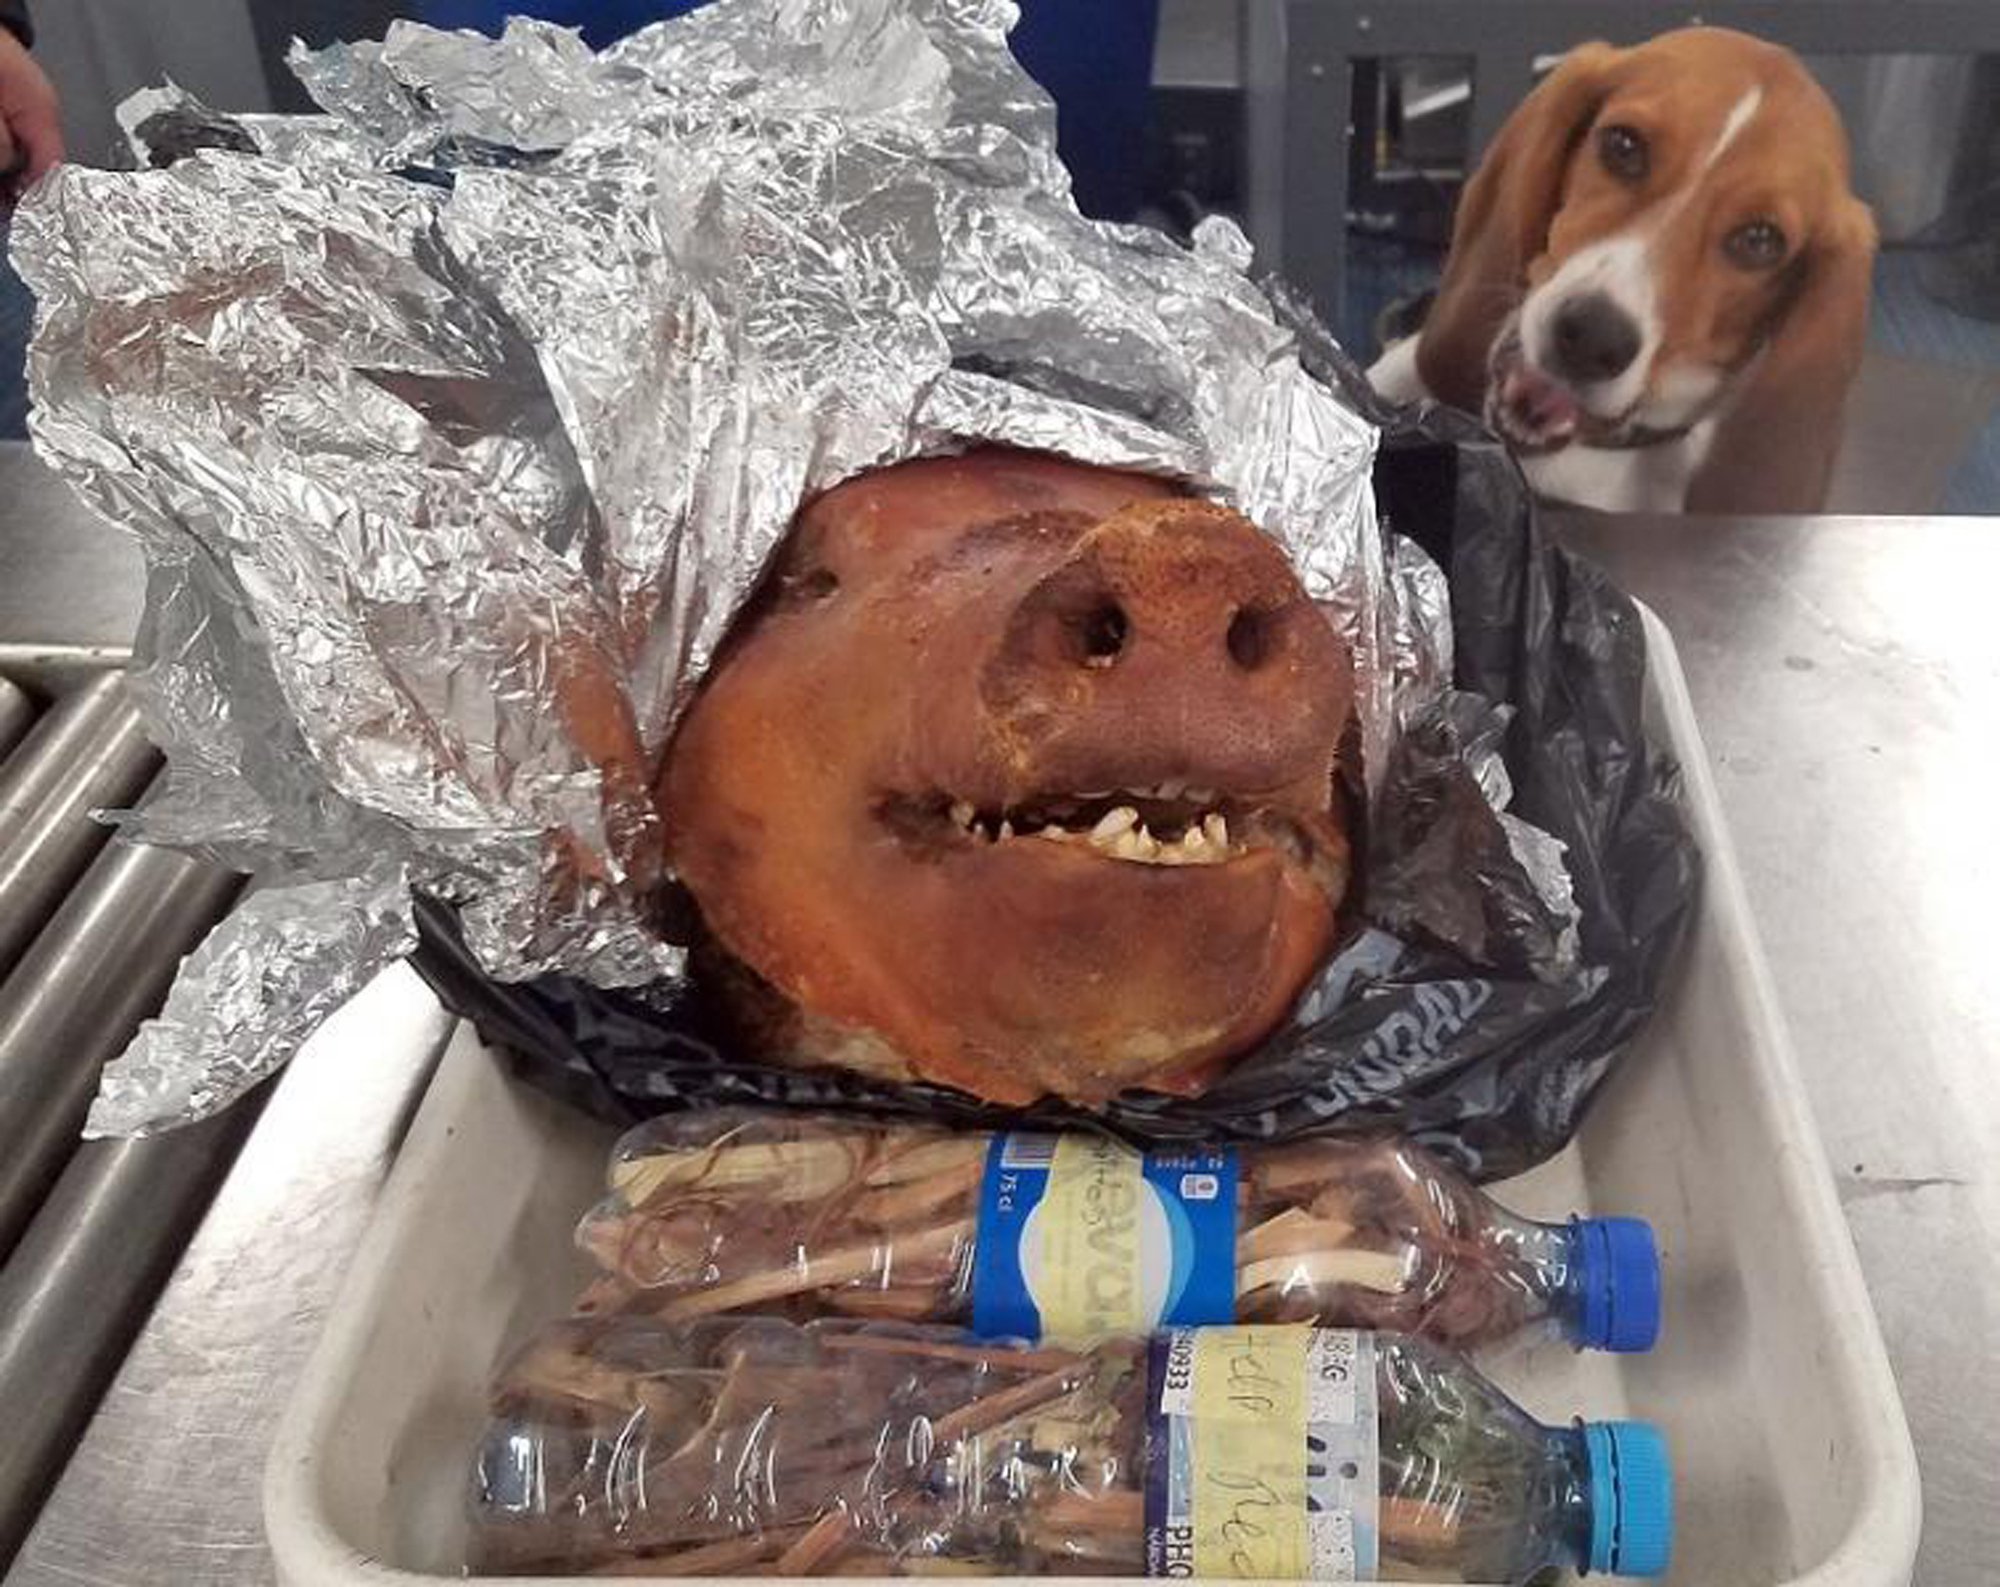 Hardy, a reptéri kutya hősiesen kiszagolta az Ecuadorból becsempészett sült disznófejet